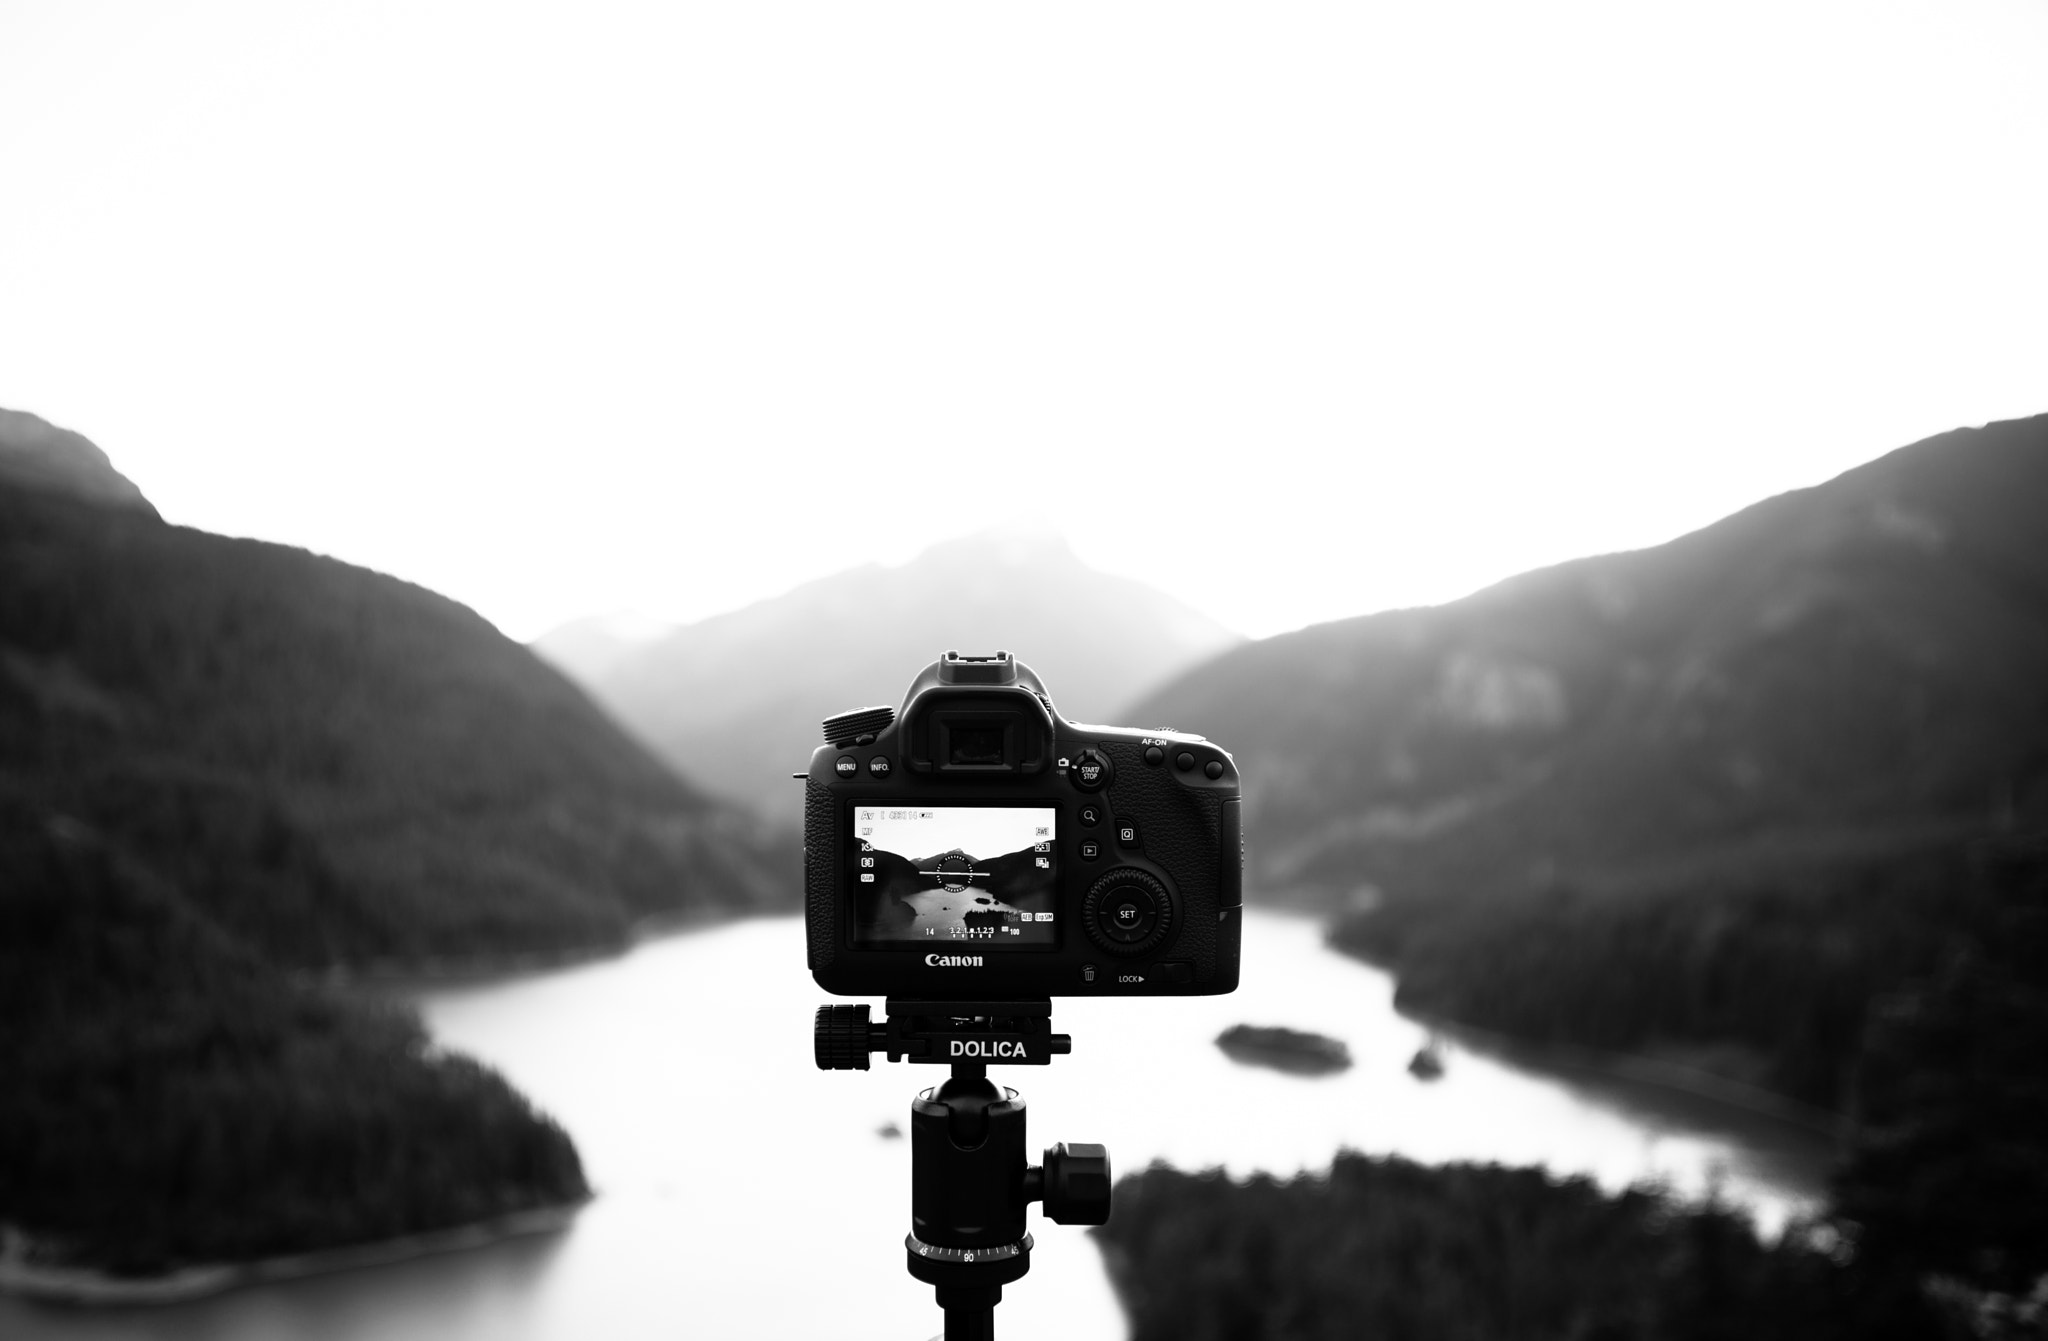 Nikon D800 + Nikon AF Nikkor 24-85mm F2.8-4D IF sample photo. Landscape in black and white photography